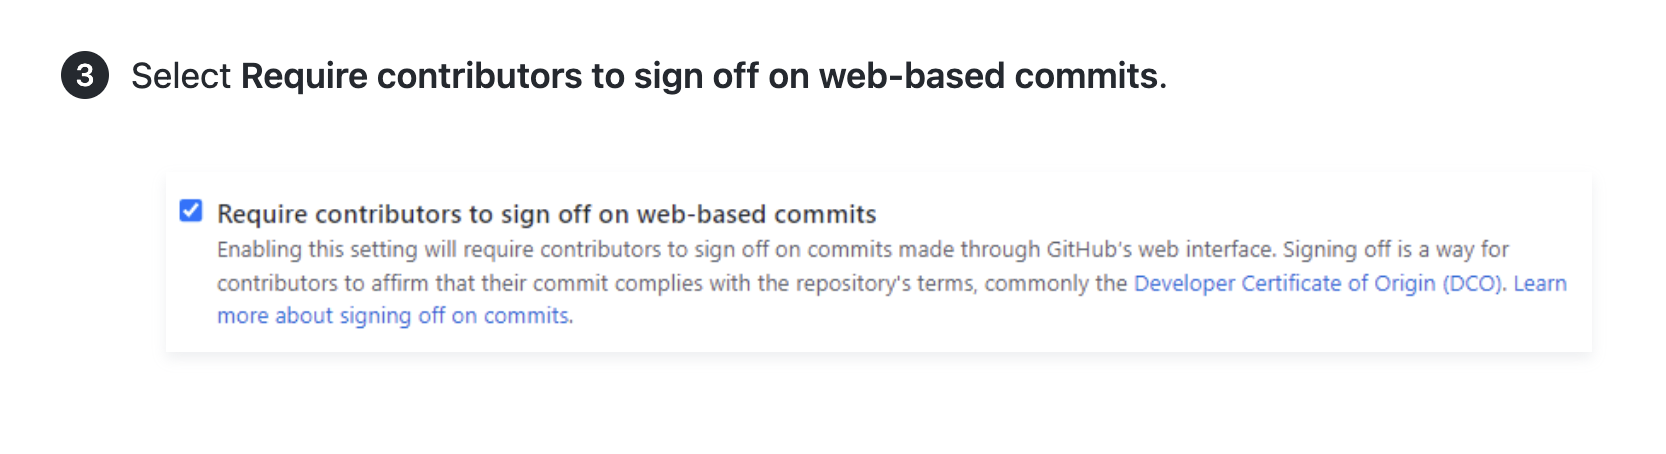 Captura de pantalla de un artículo que muestra instrucciones y una captura de pantalla de UI para pedir que los colaboradores aprueben las confirmaciones basadas en Web.